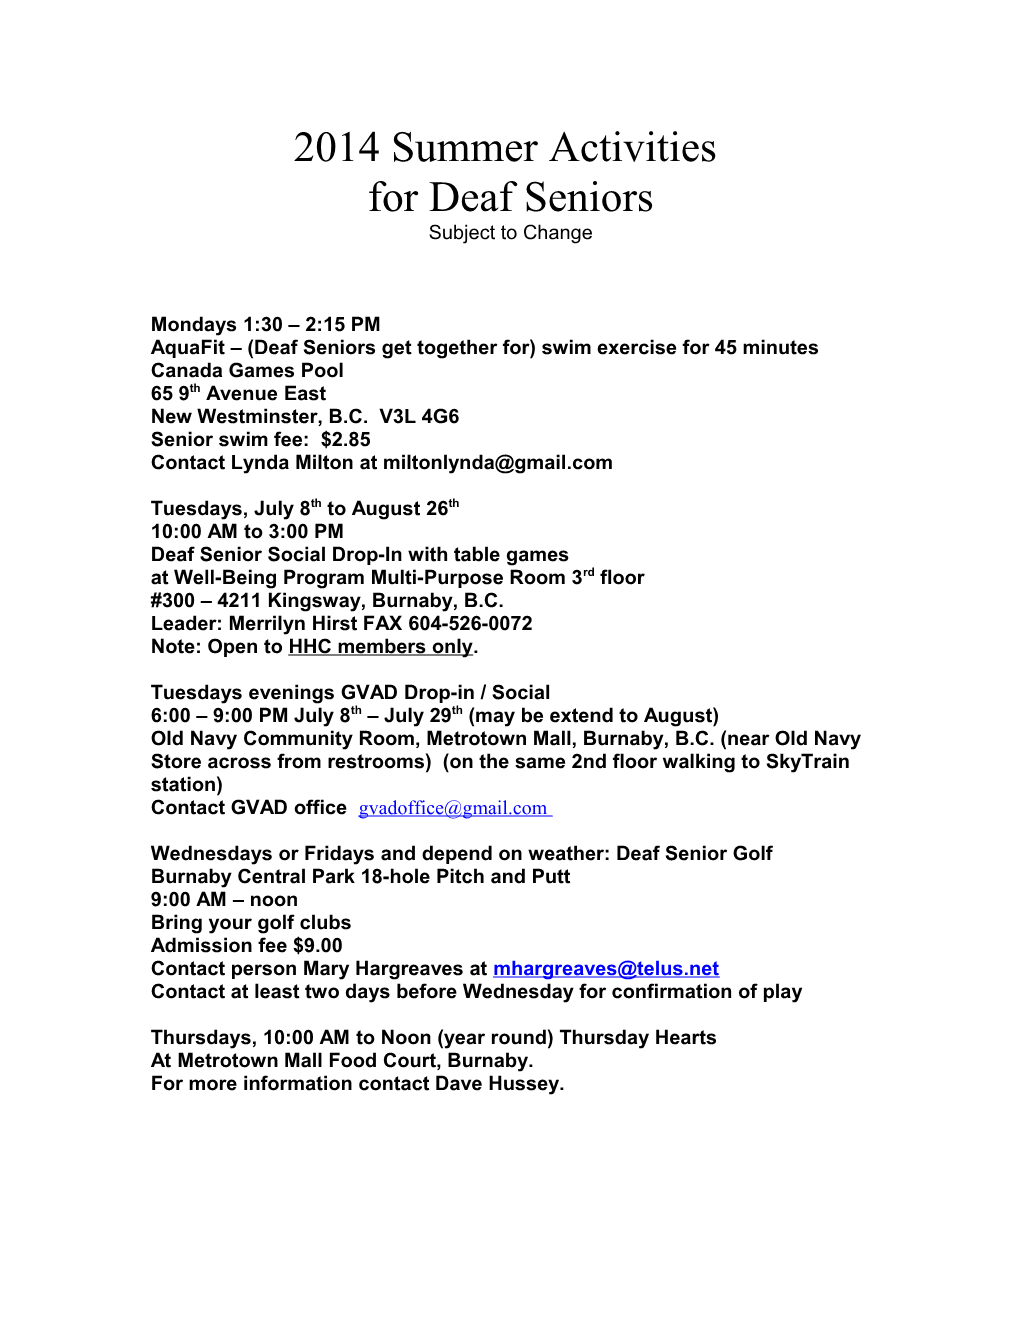 Summer Activities for Deaf Seniors